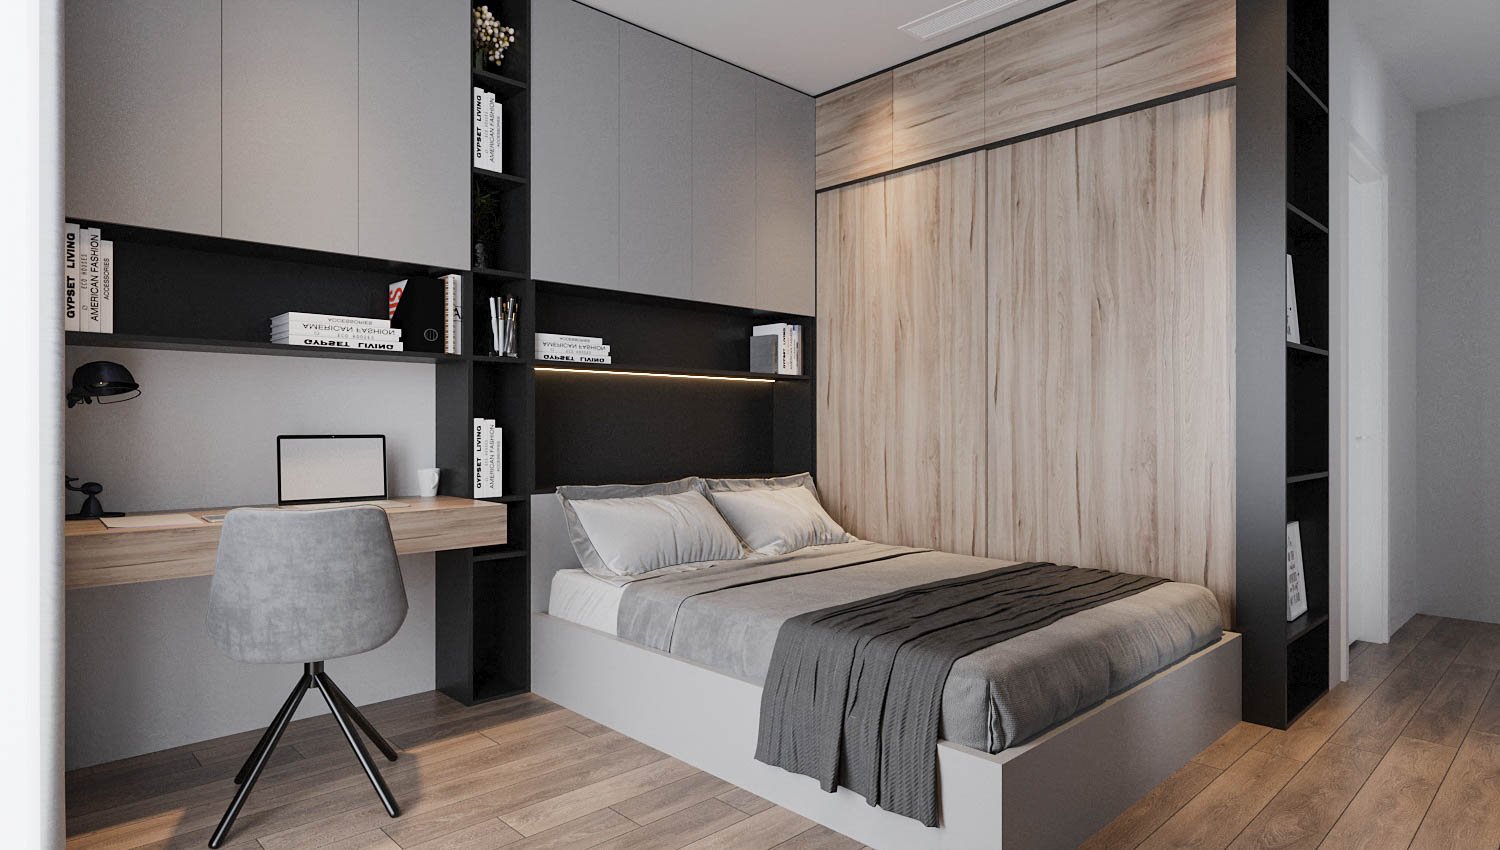 Các phòng ngủ trong căn hộ Duplex đều được thiết kế theo phong cách hiện đại, tối giản, chú trọng vào công năng sử dụng.